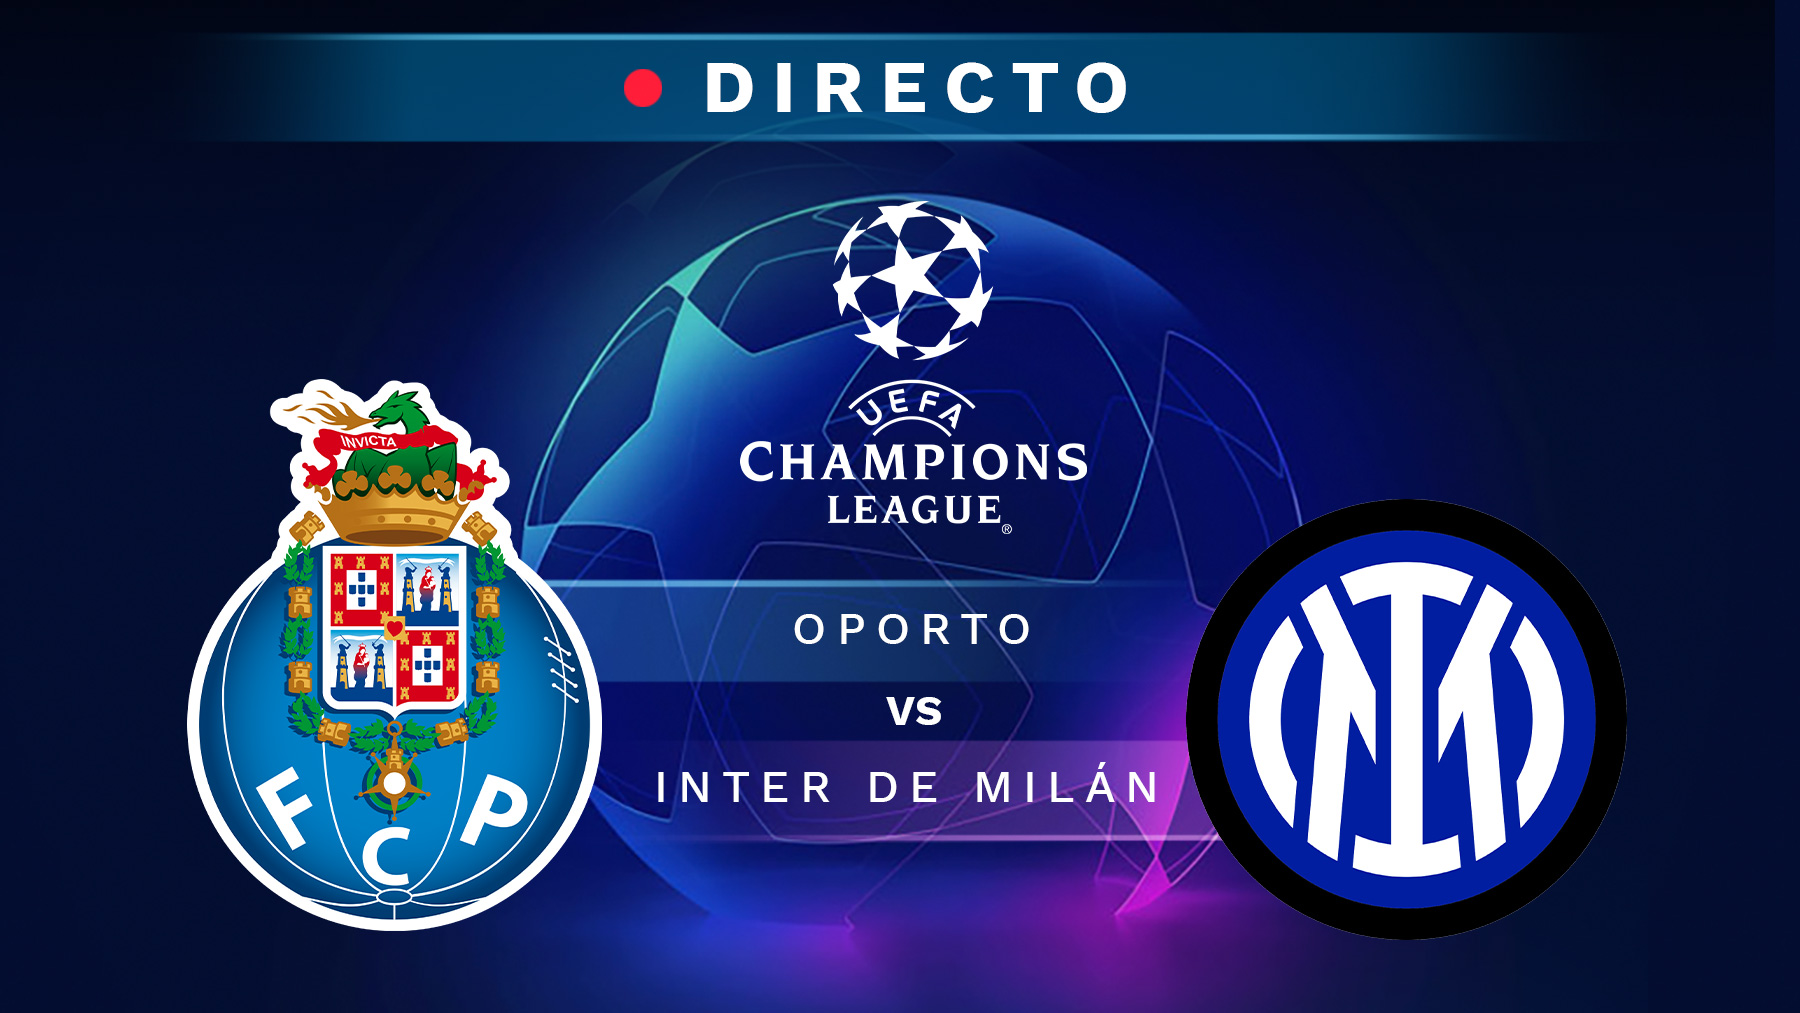 Oporto – Inter de Milán, en directo: resultado, goles y minuto a minuto del partido de Champions League hoy.